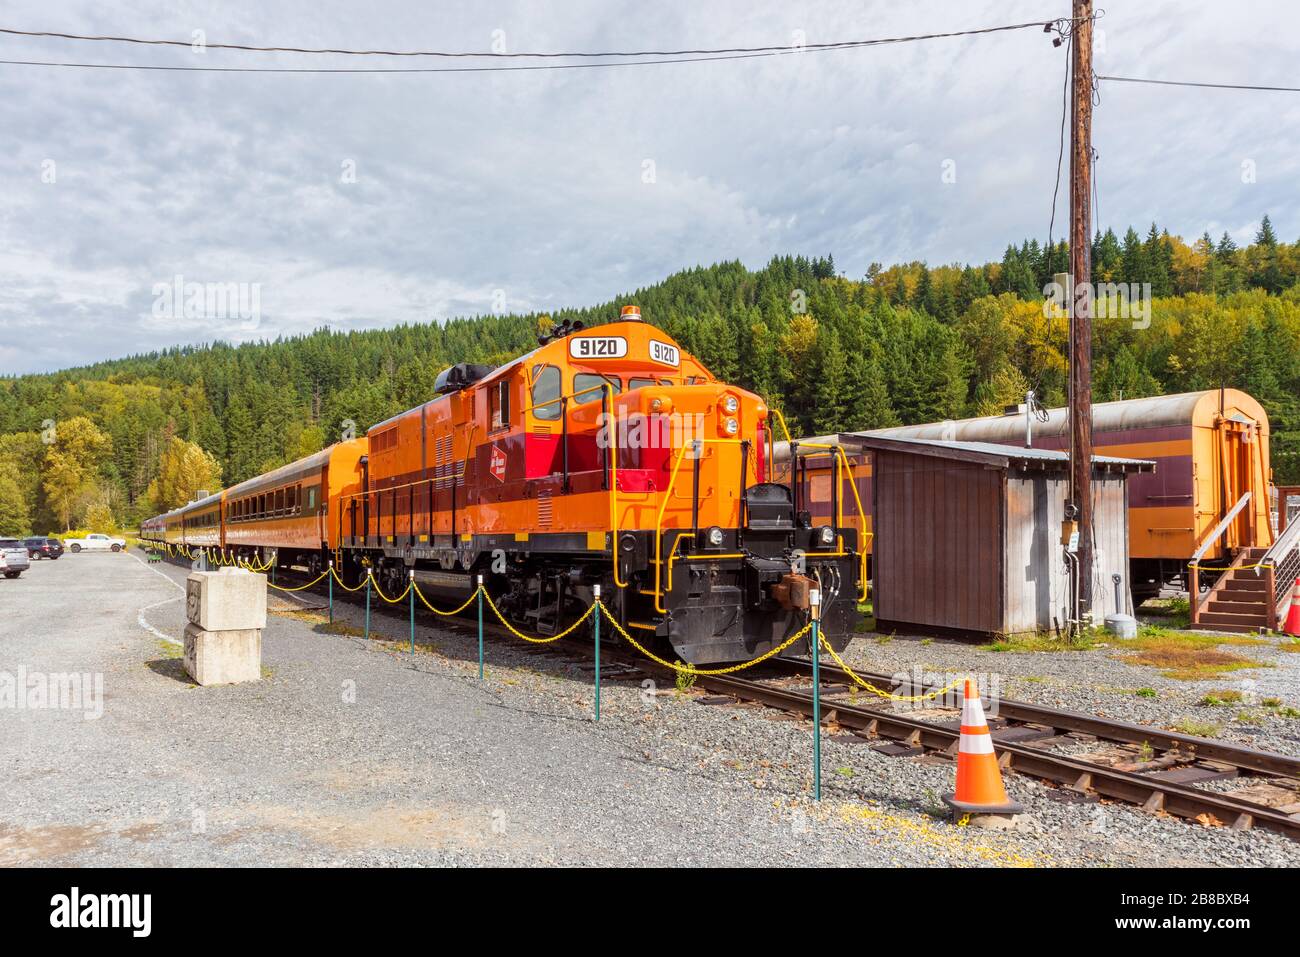 Train of the Mount Rainier Scenic Railroad in Elbe, Washington, USA Stock Photo